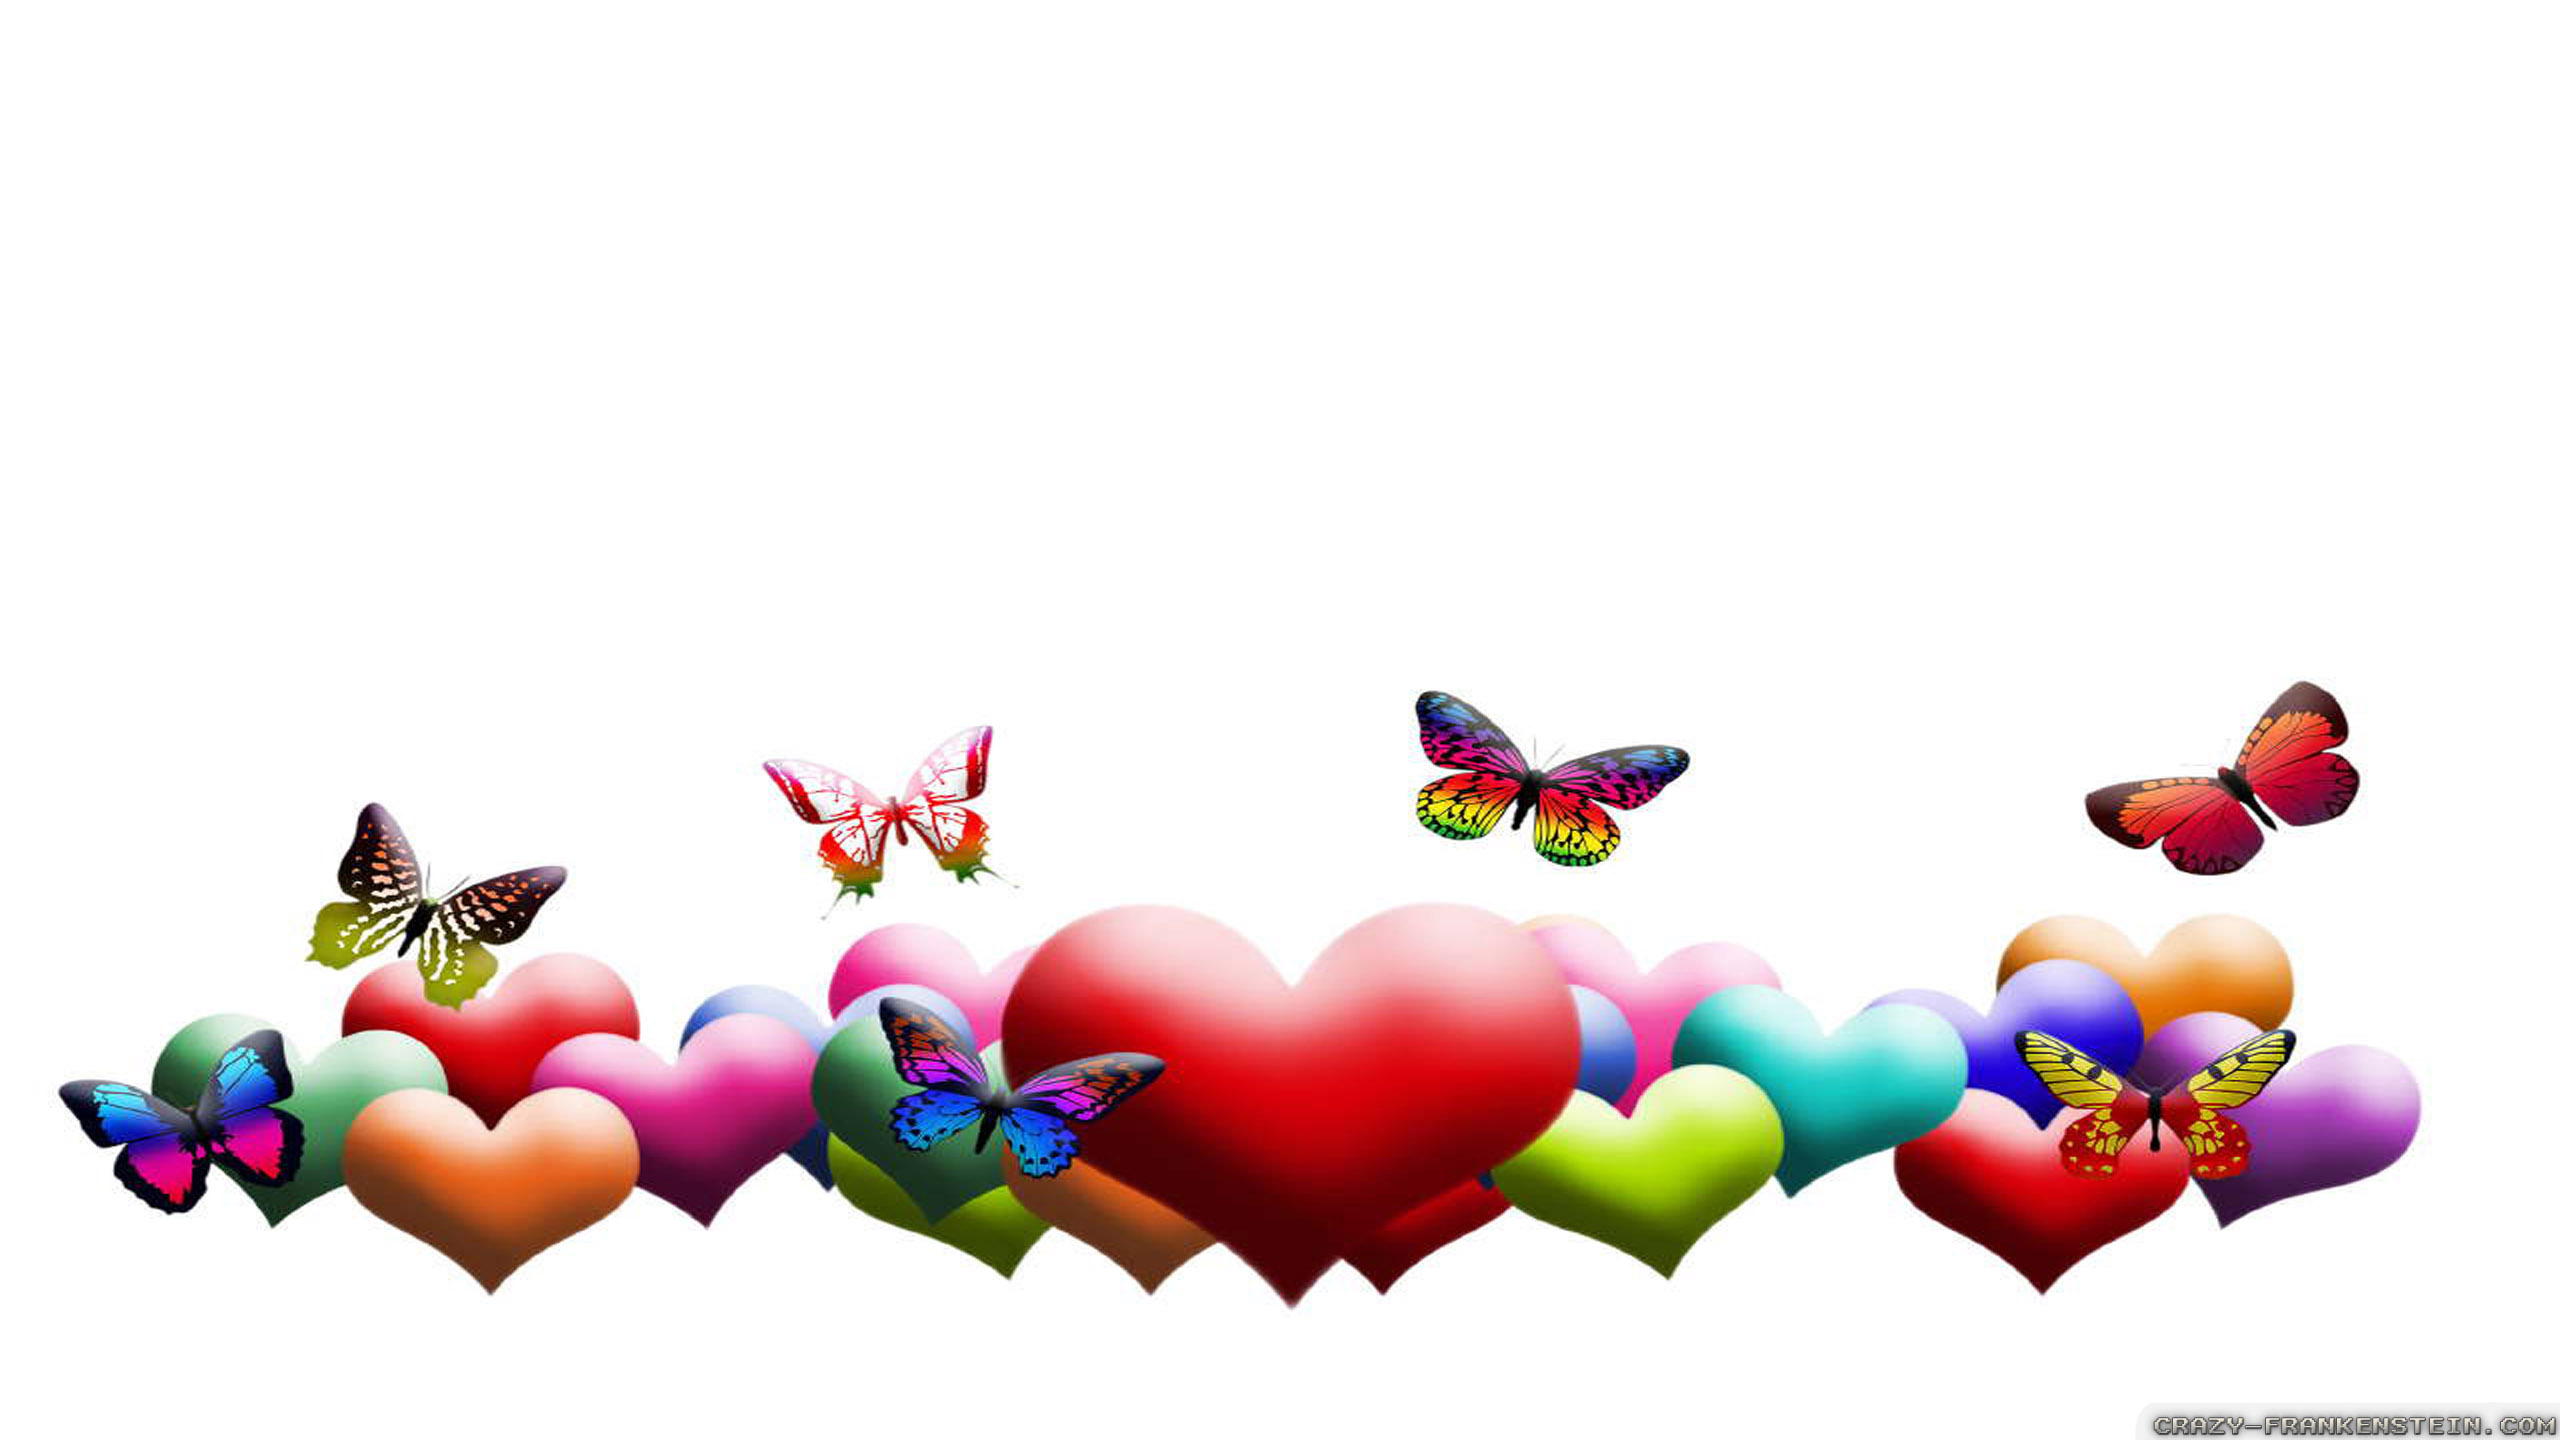 Love Butterflies wallpapers - Crazy Frankenstein